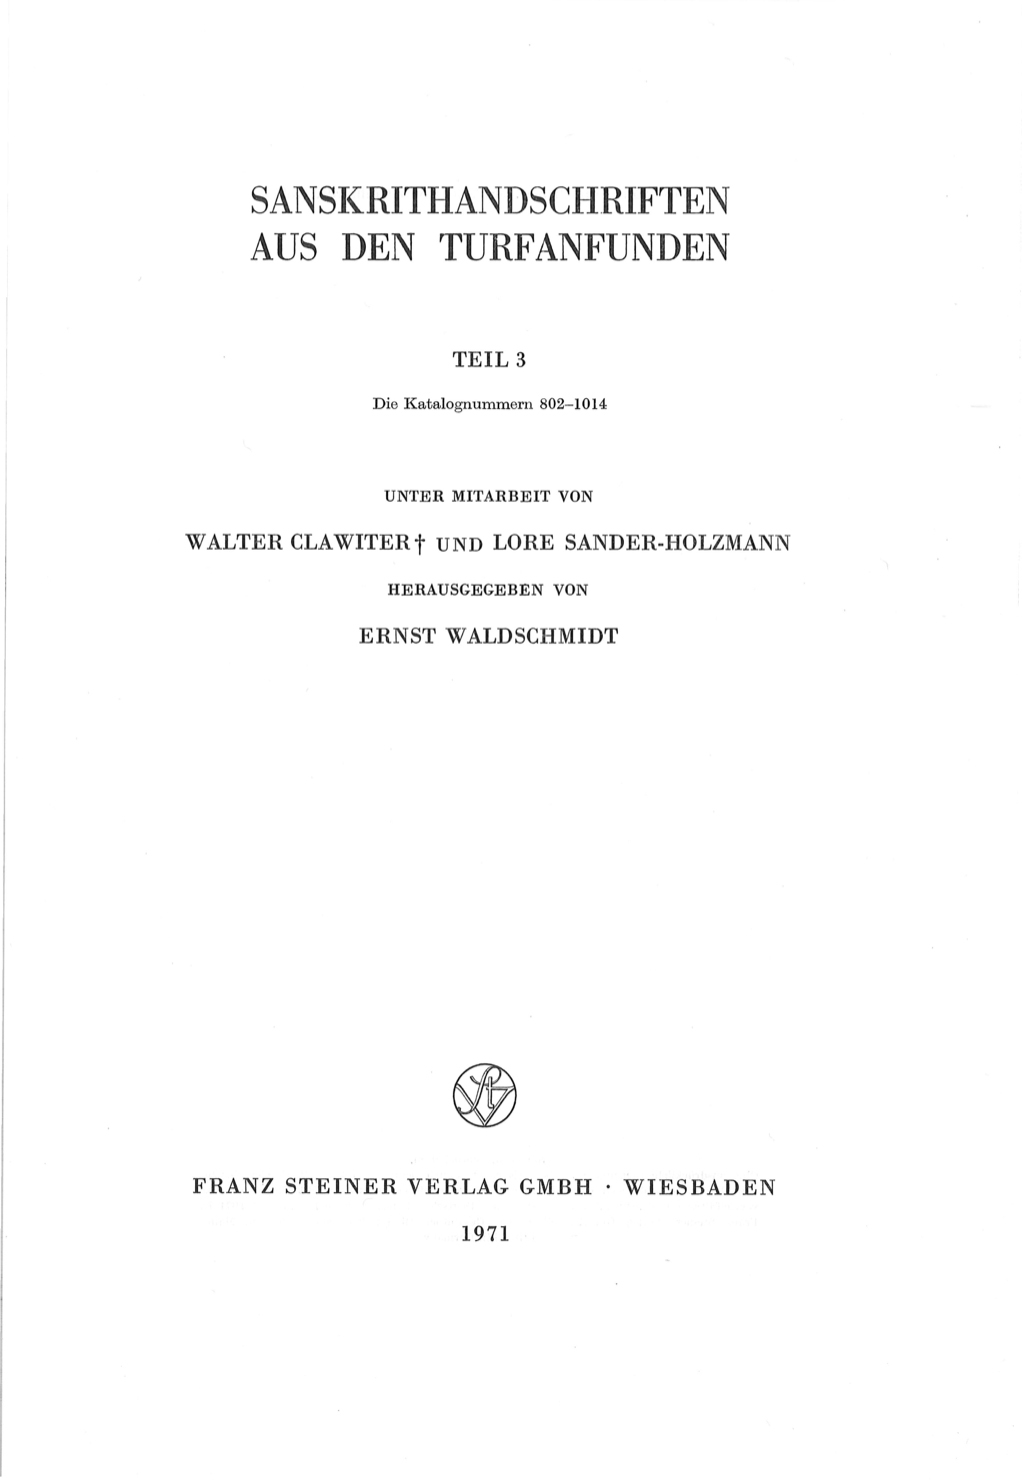 Sanskrithandschriften aus den Turfanfunden Teil 3 1971-front.jpg